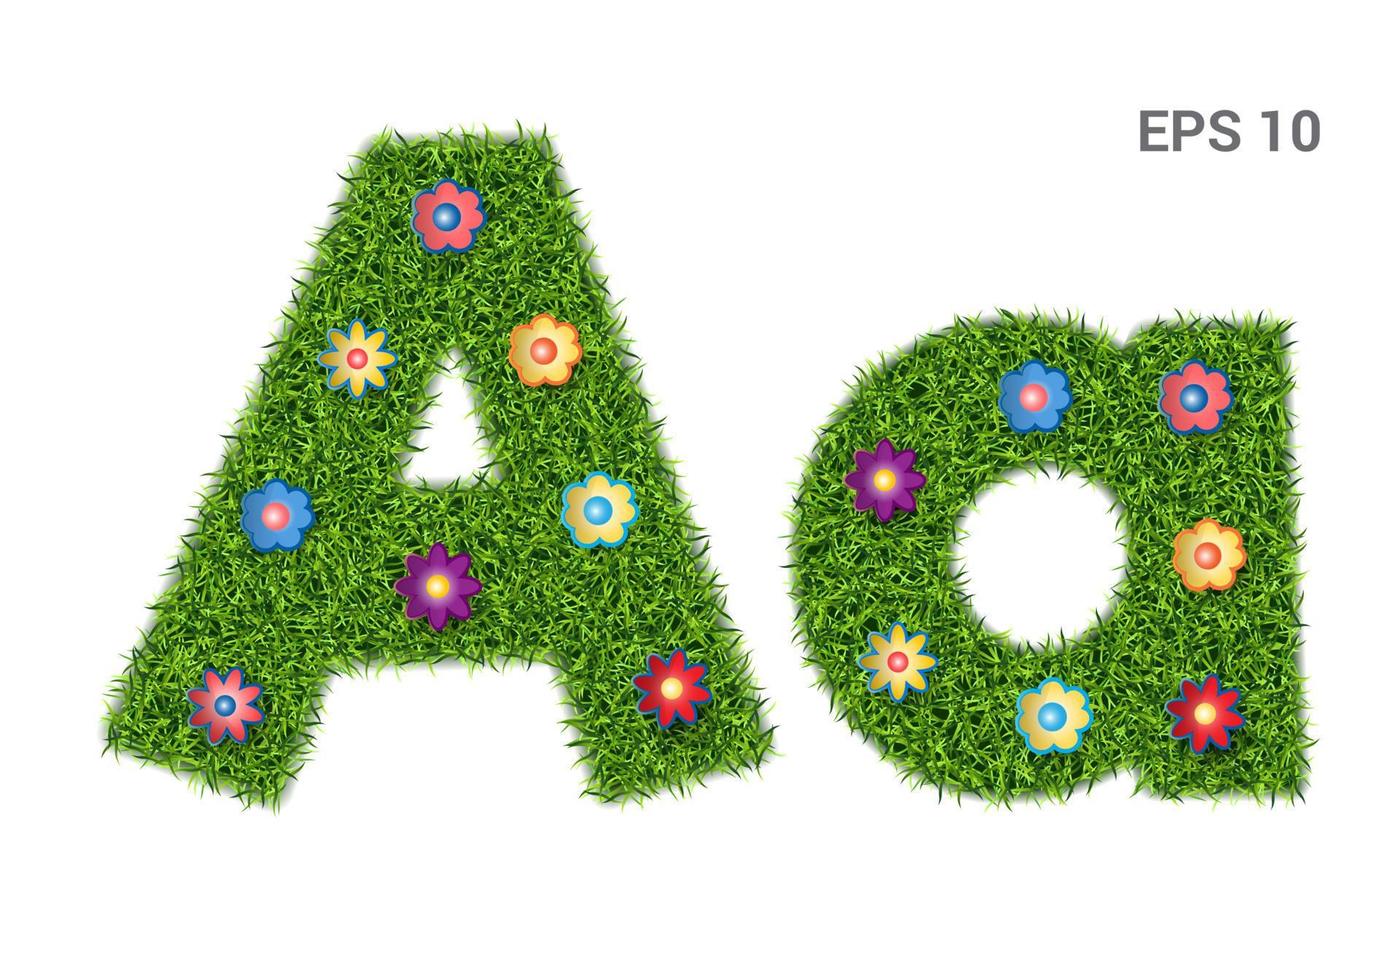 aa - hoofd- en hoofdletters van het alfabet met een textuur van gras. Moors gazon met bloemen. geïsoleerd op een witte achtergrond. vector illustratie